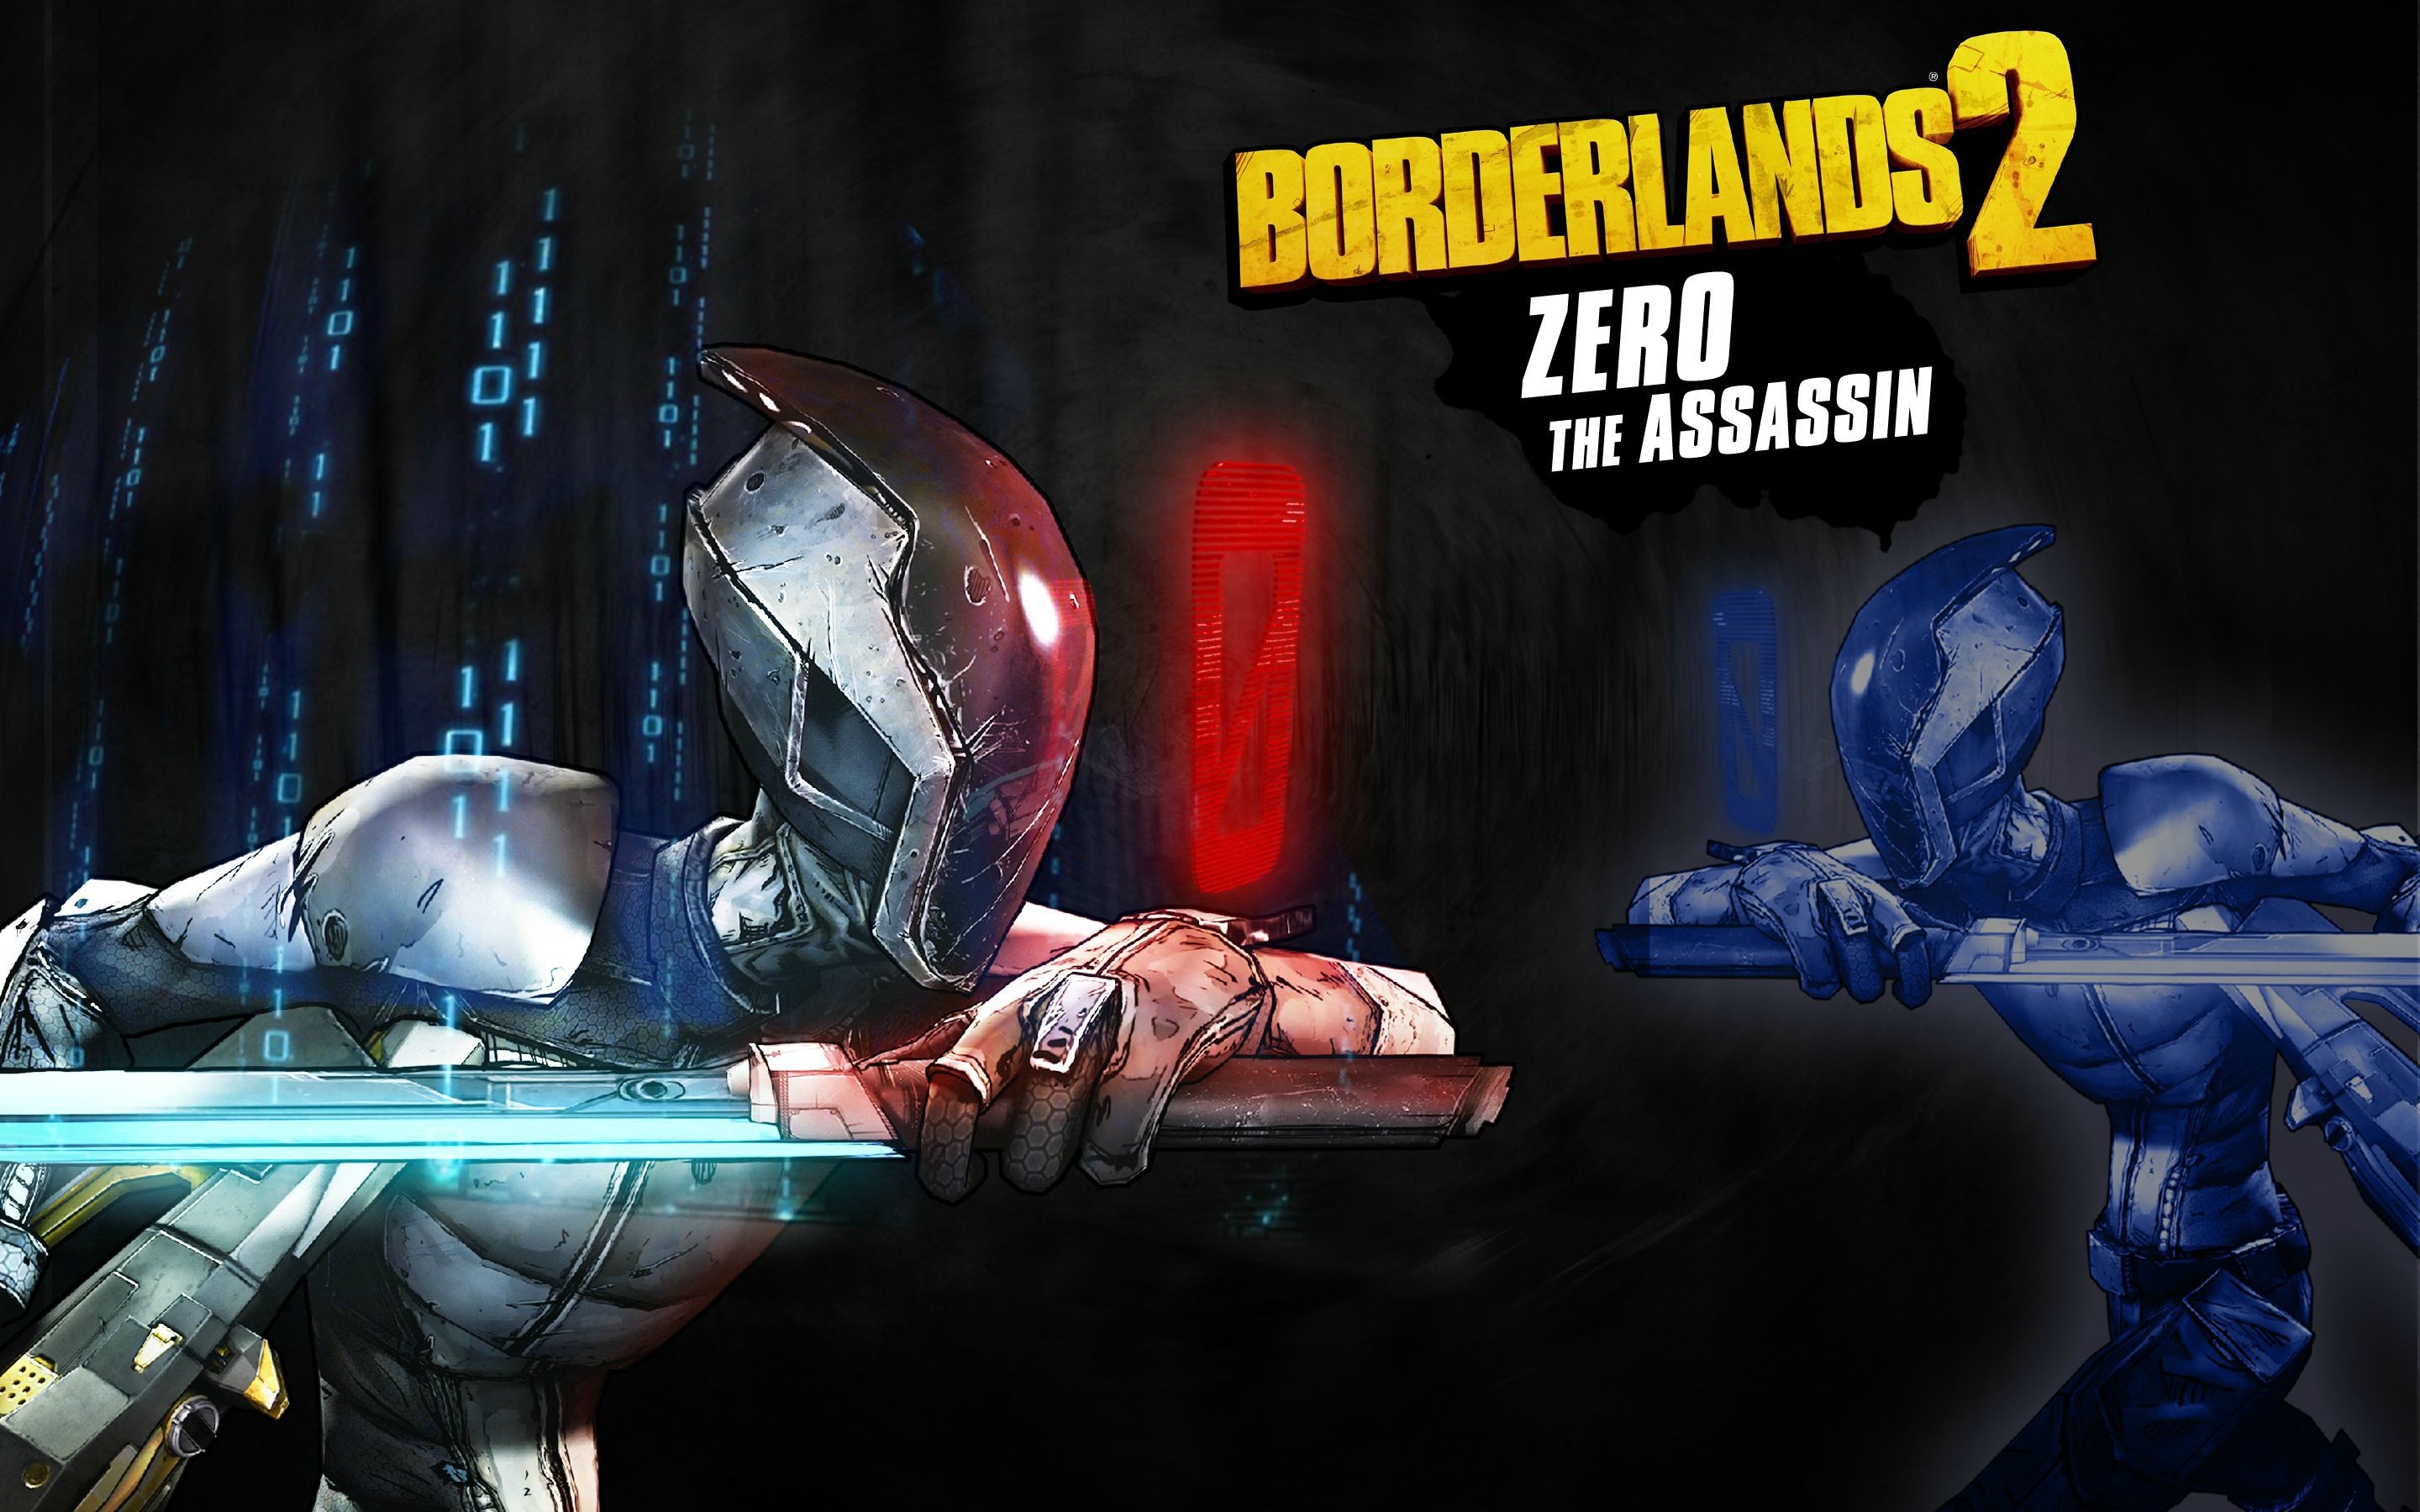 General 2880x1800 Borderlands Borderlands 2 video games Zero (Borderlands 2) video game art PC gaming science fiction